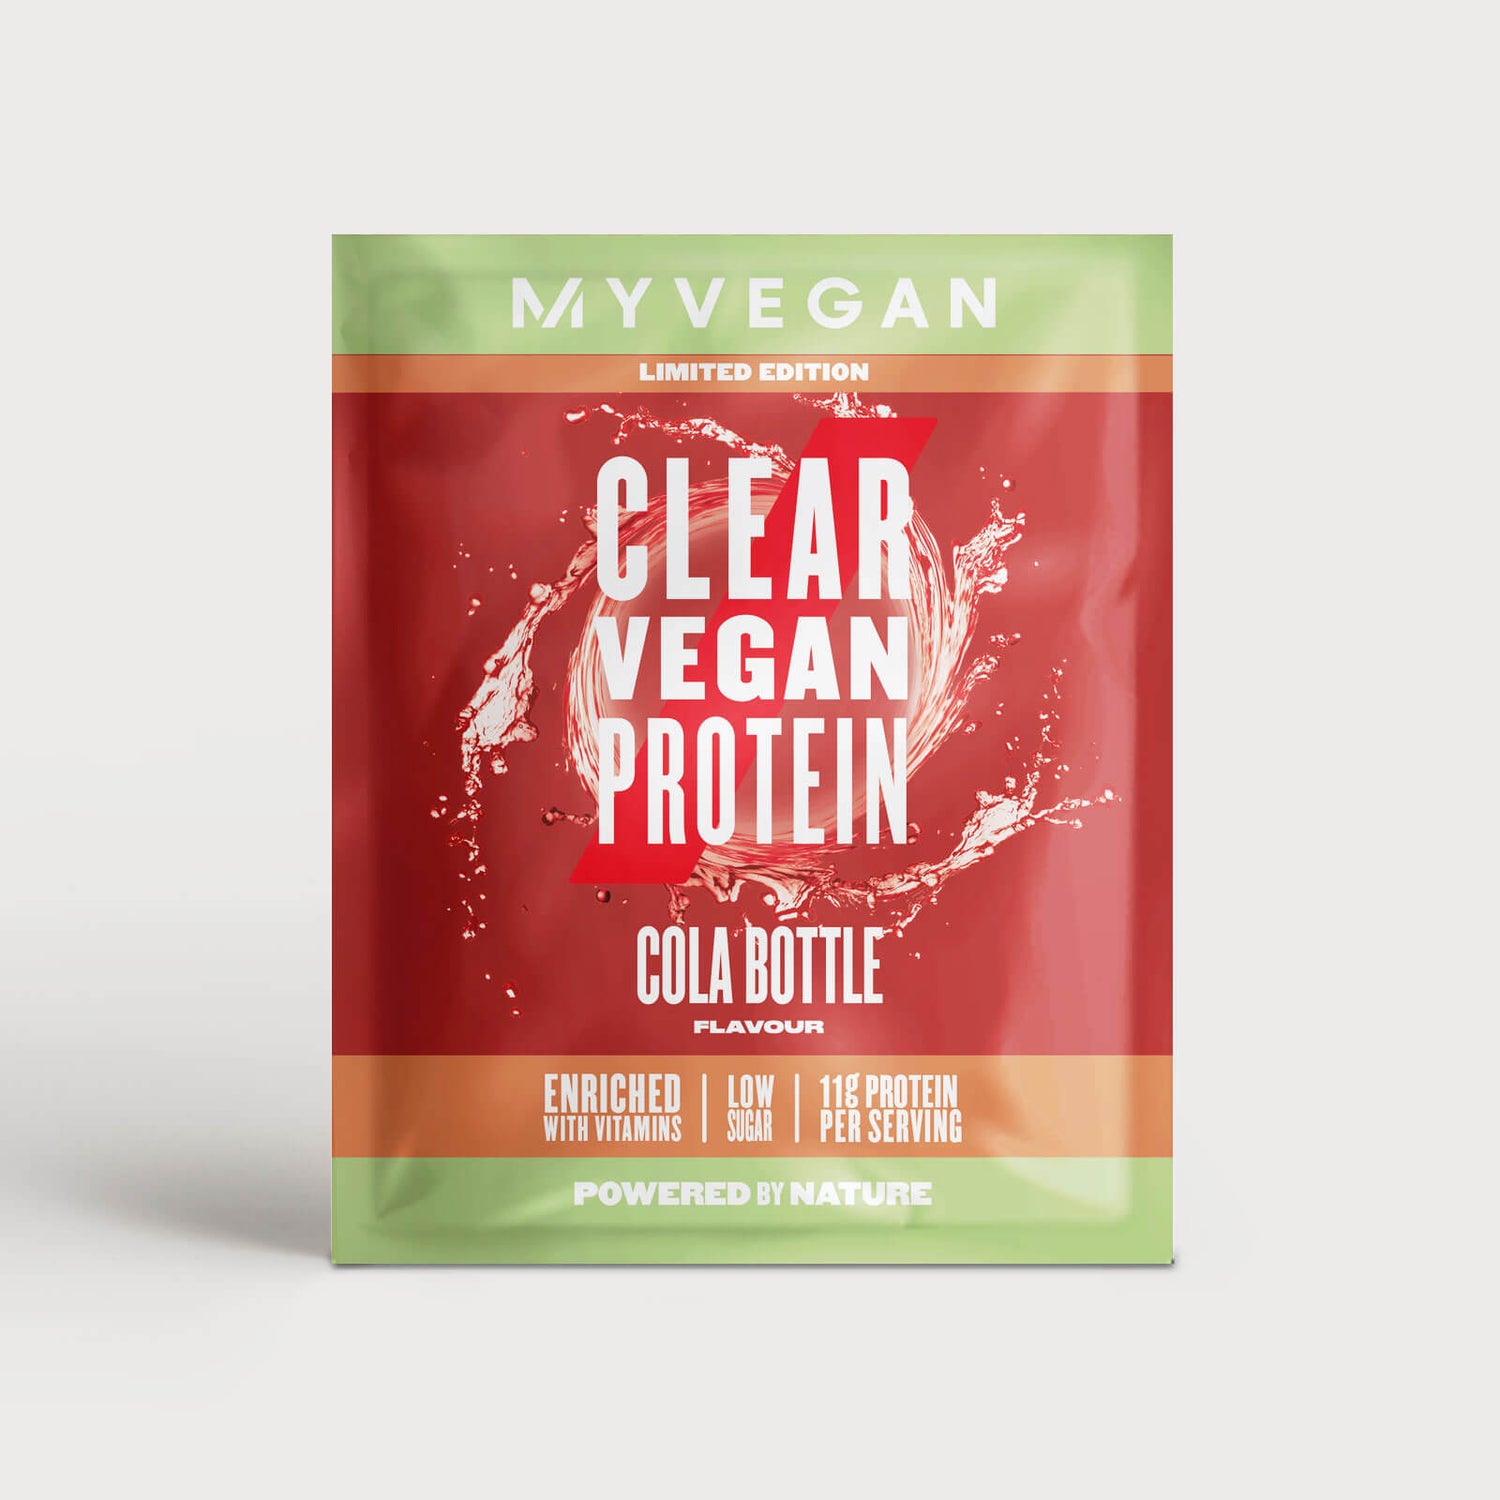 Clear Vegan Protein (Probe) - 15g - Cola Bottle